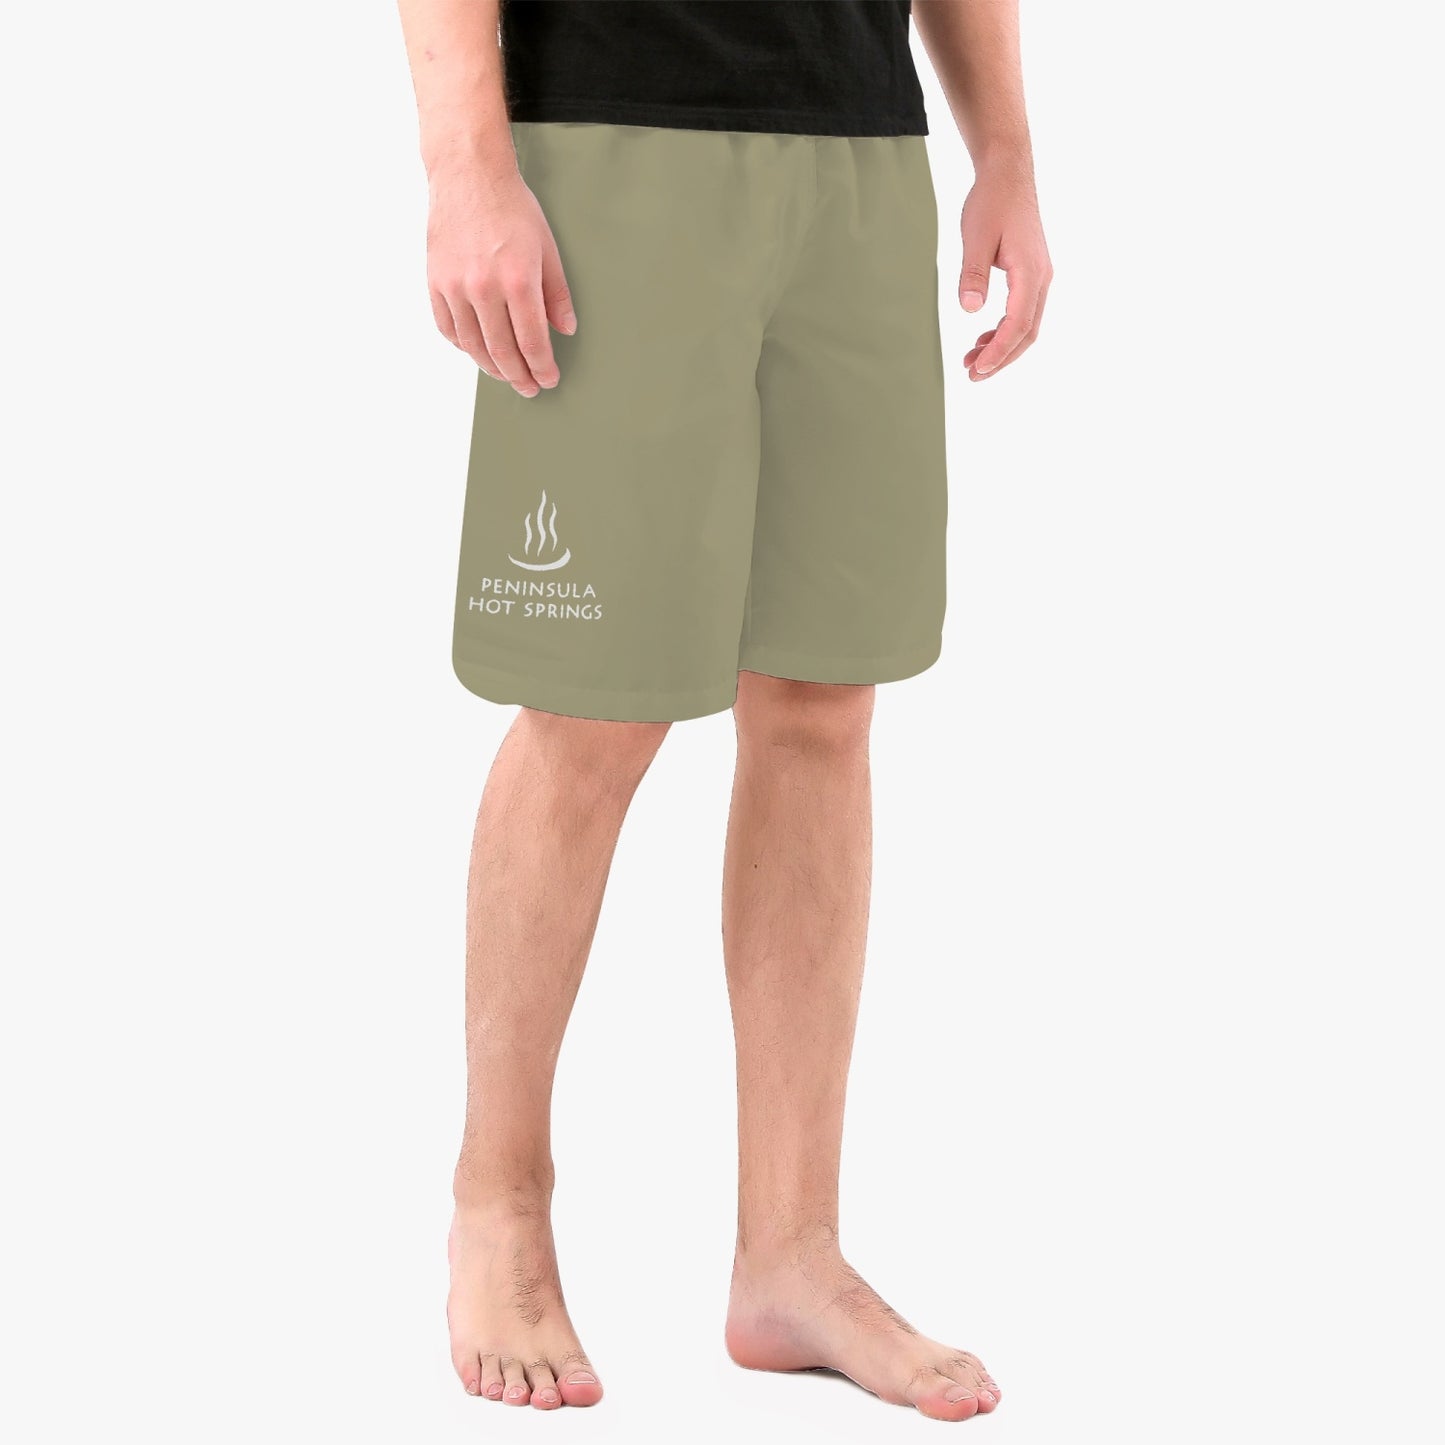 PENINSULAR HOT SPRINGS Men’s Board Shorts - Khaki